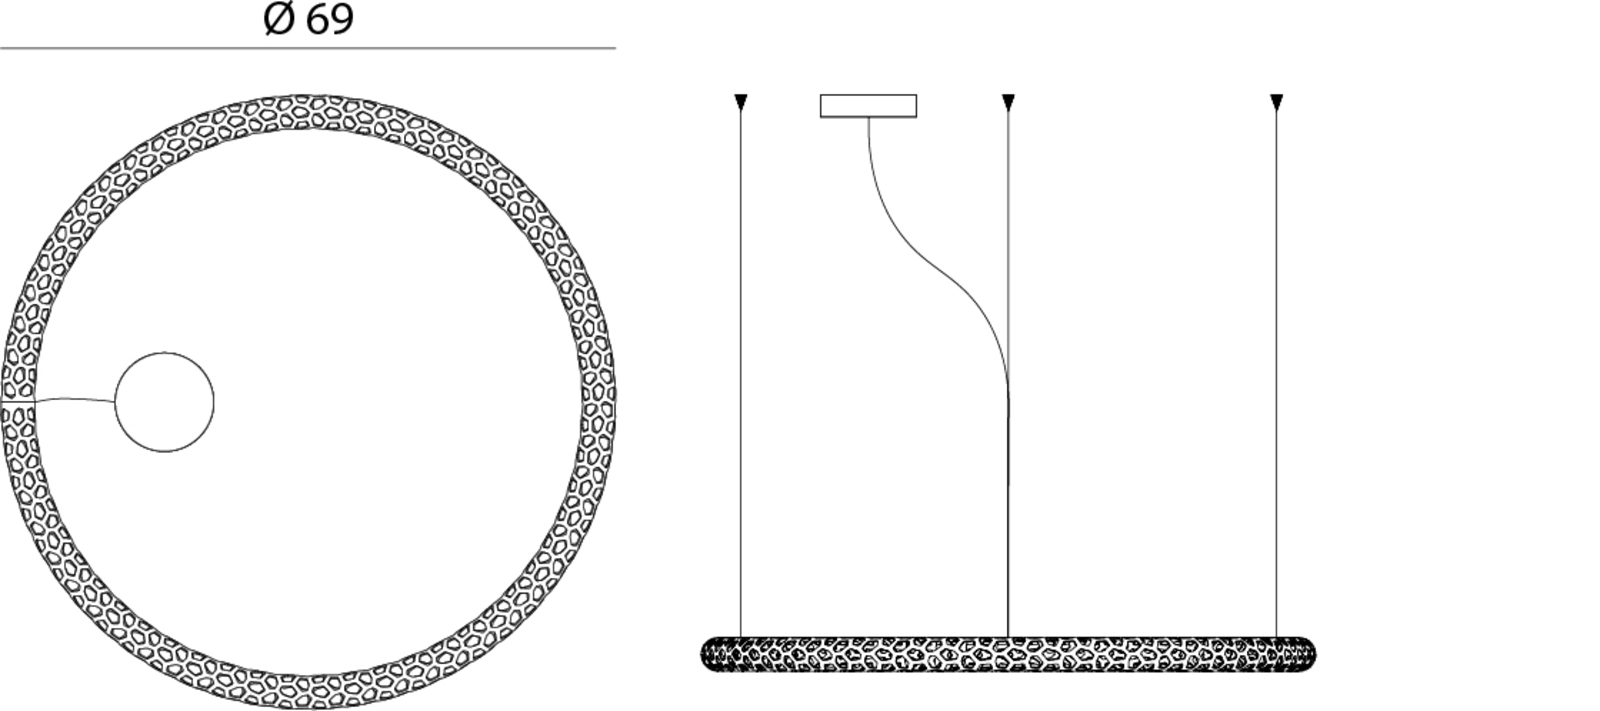 Rotaliana Squiggle H1 LED-Hängelampe weiß Ø 69 cm